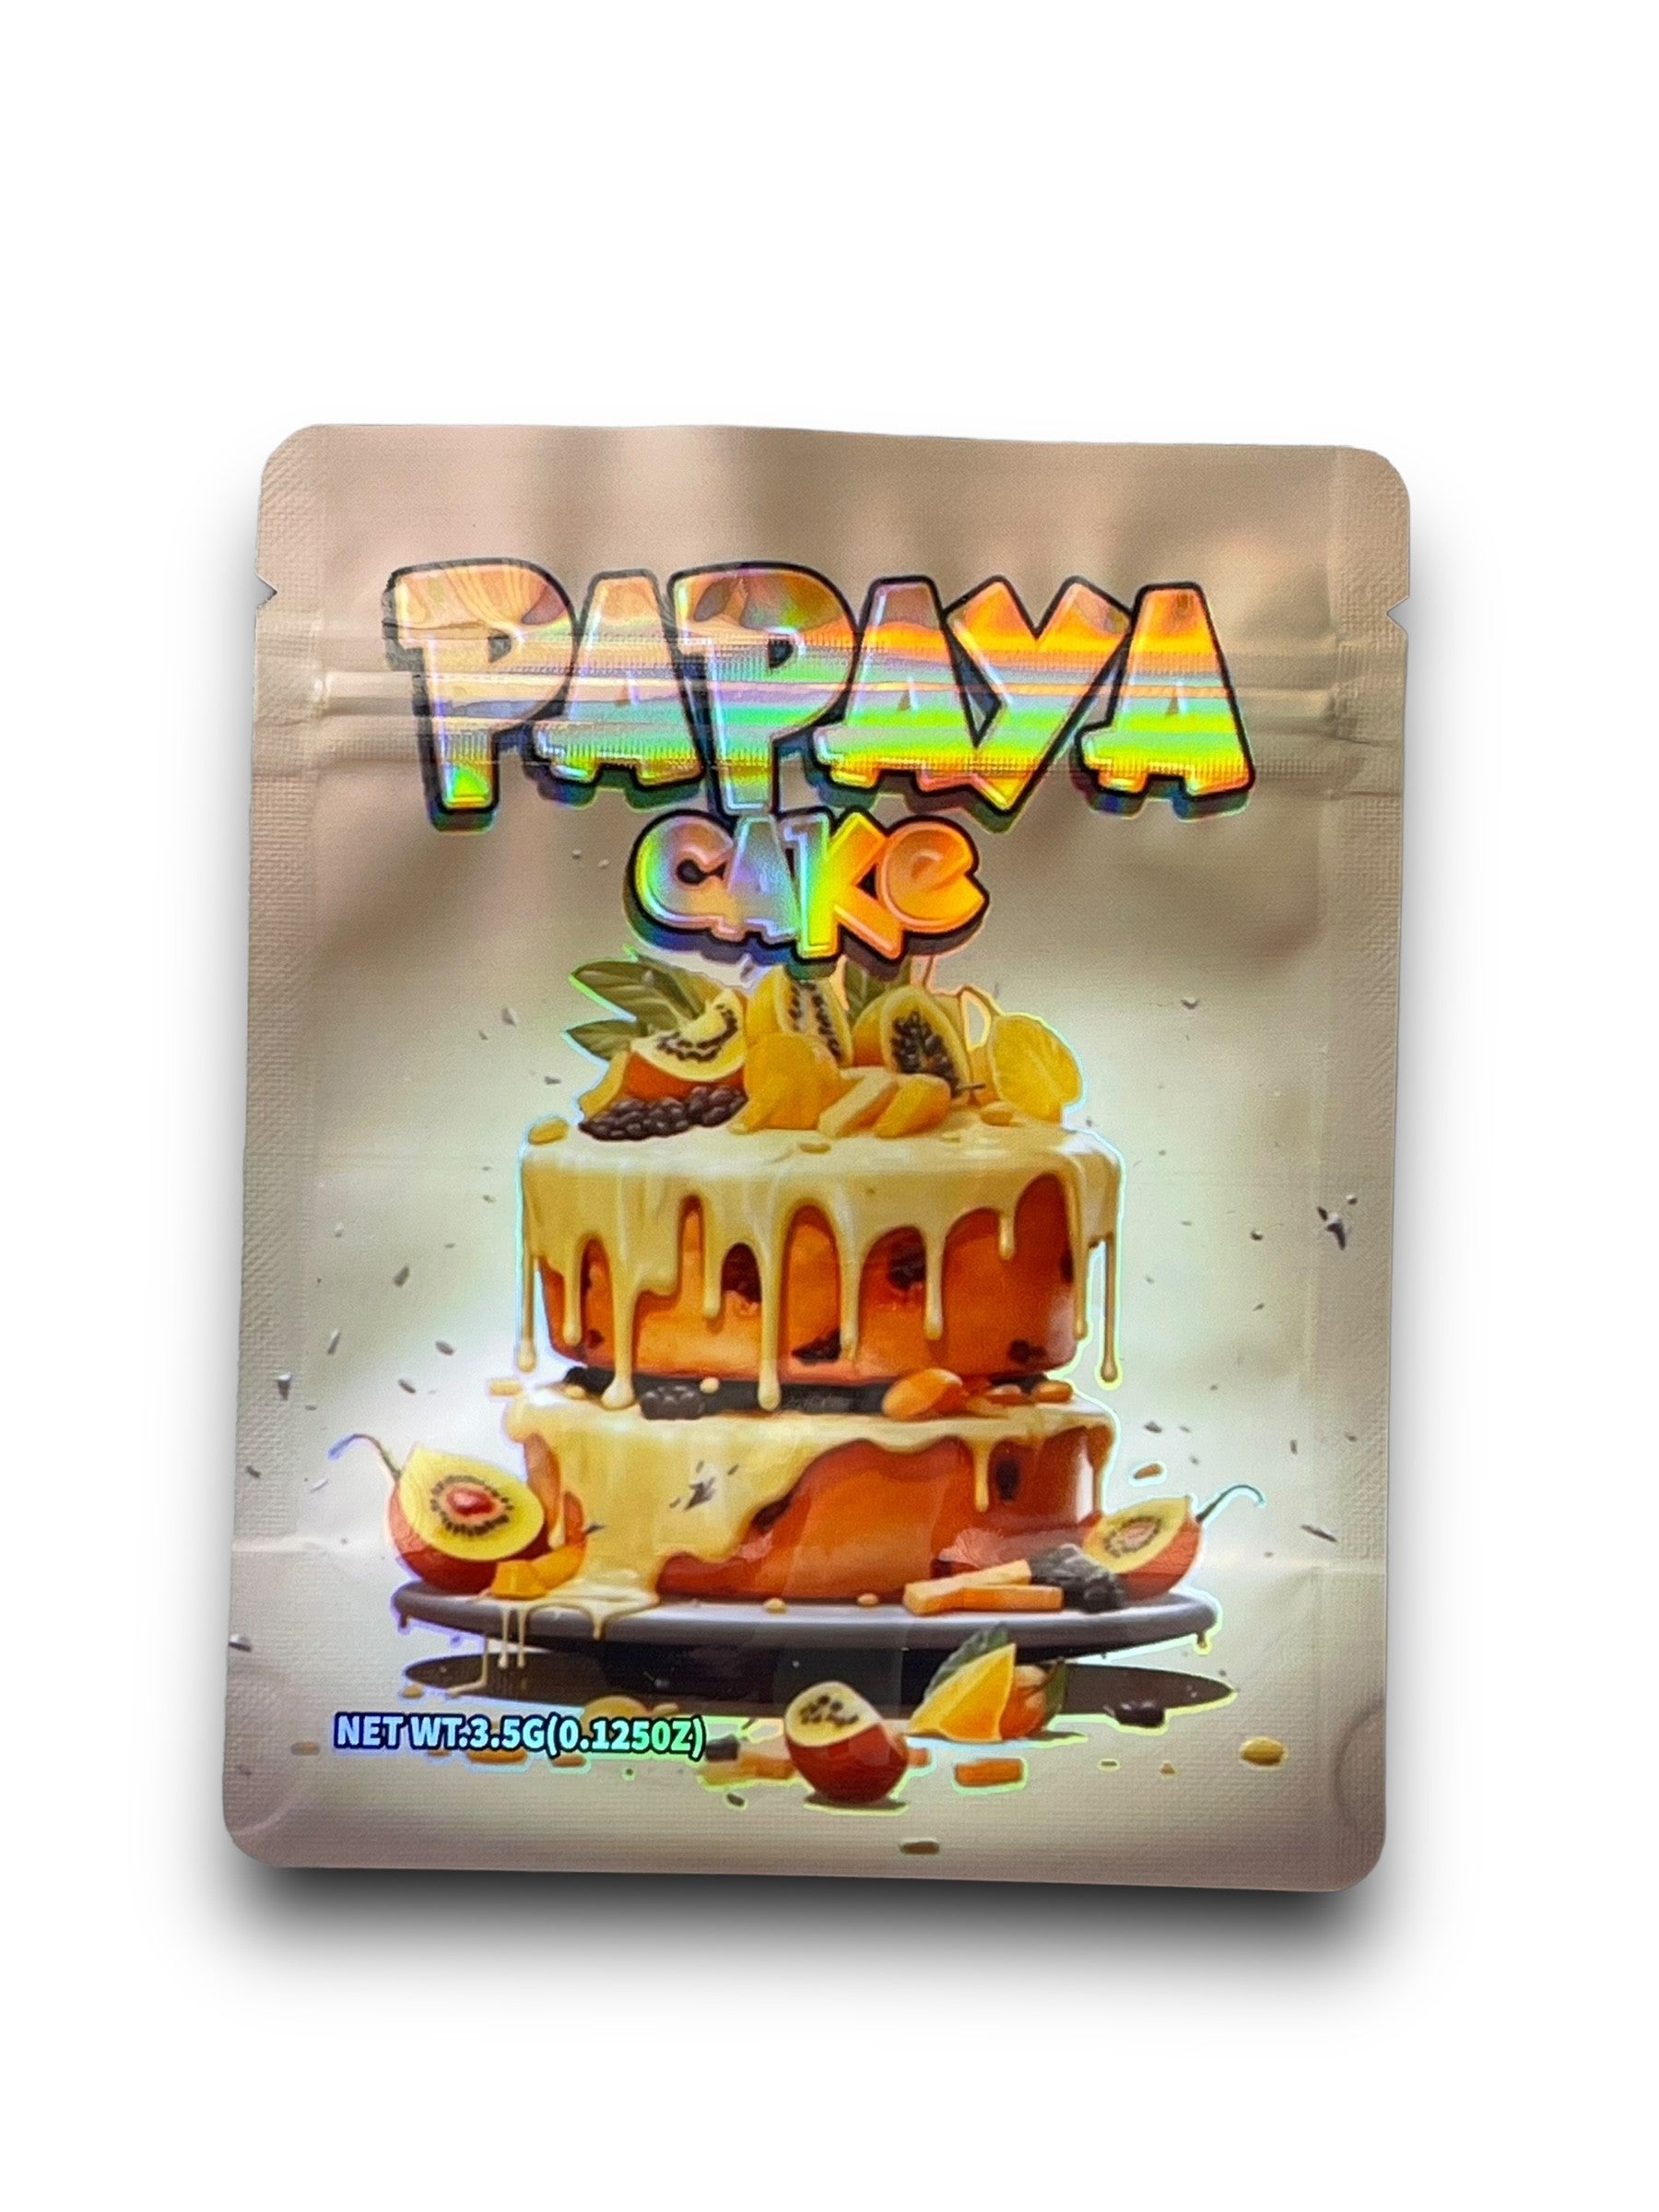 Papaya Cake 3.5G Mylar Bags Holographic